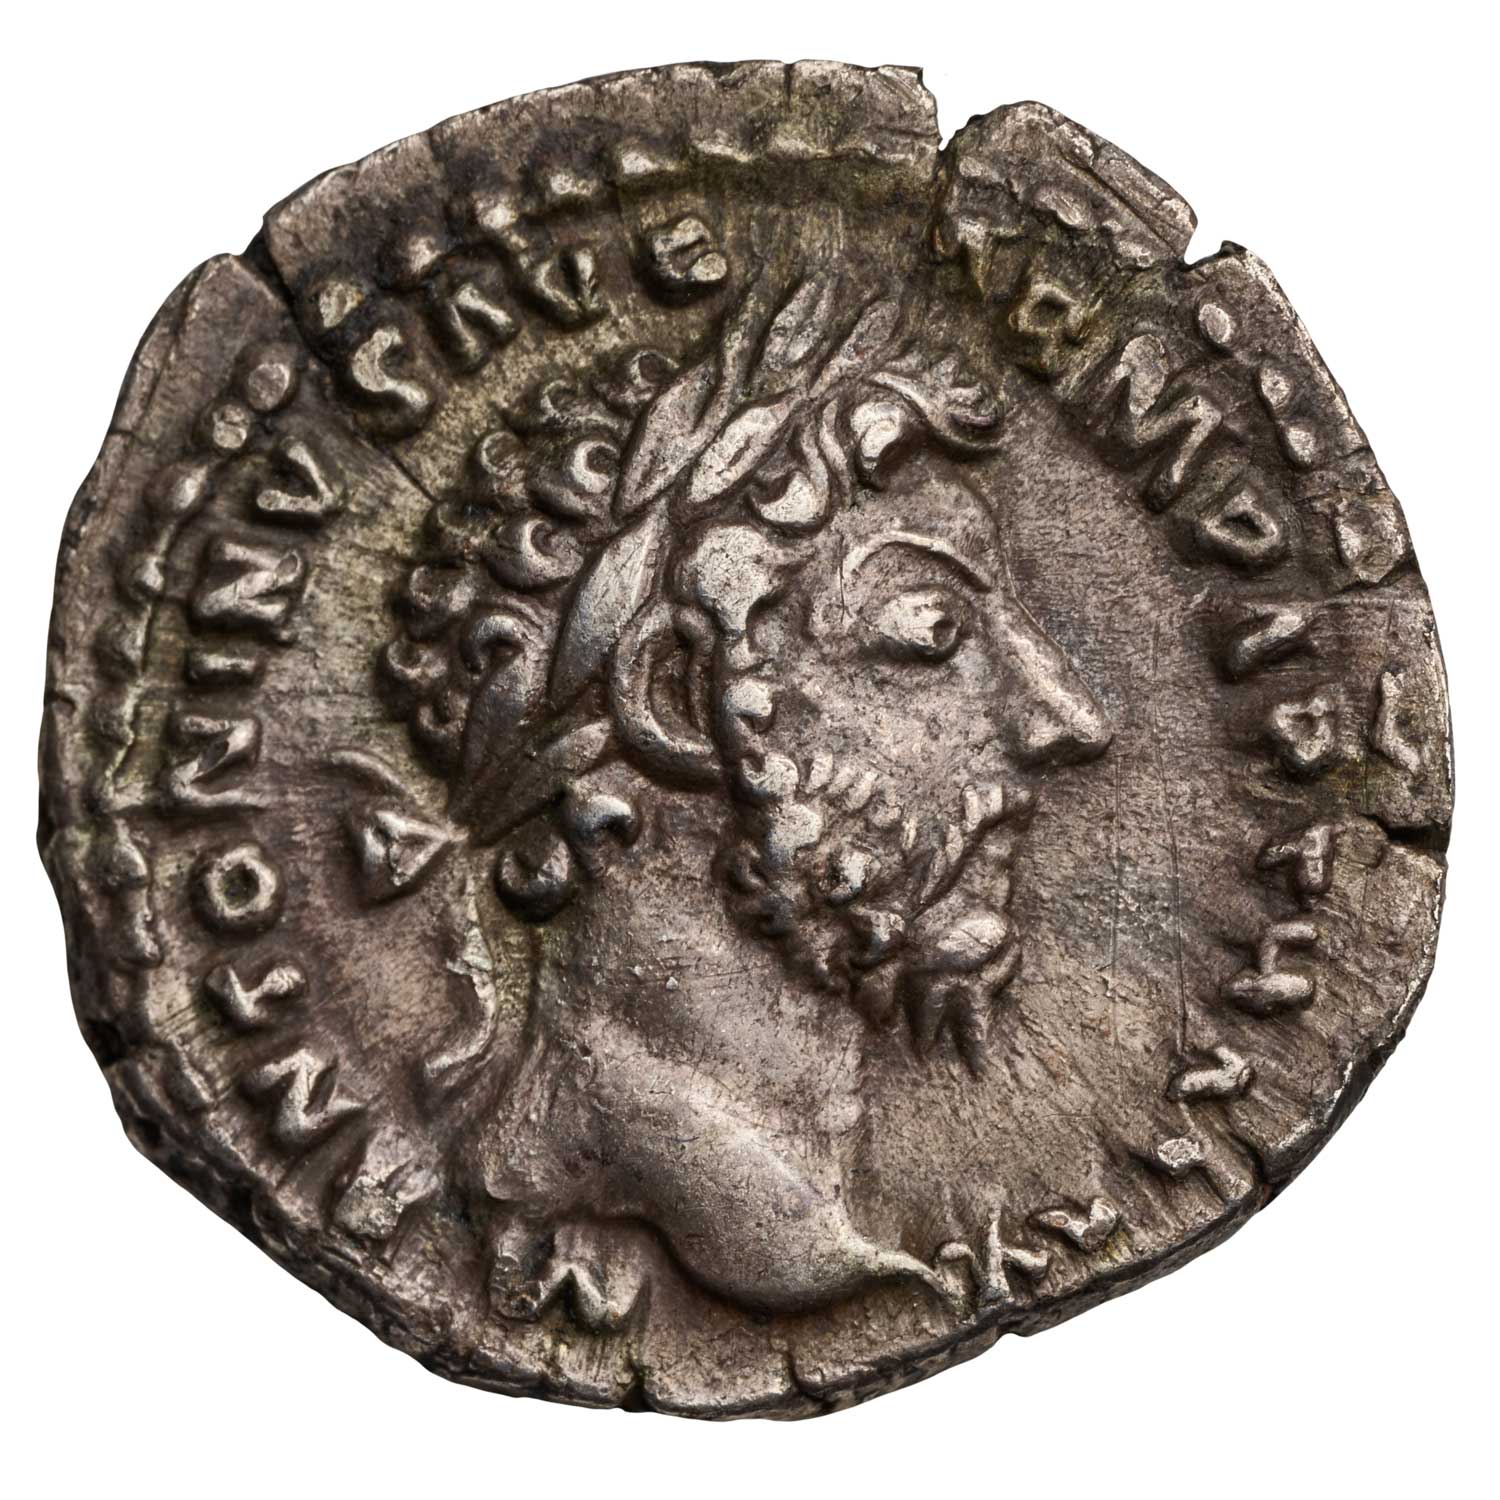 The　Silver　Denarius　AD　Marcus　161–180　Aurelius,　Royal　Mint